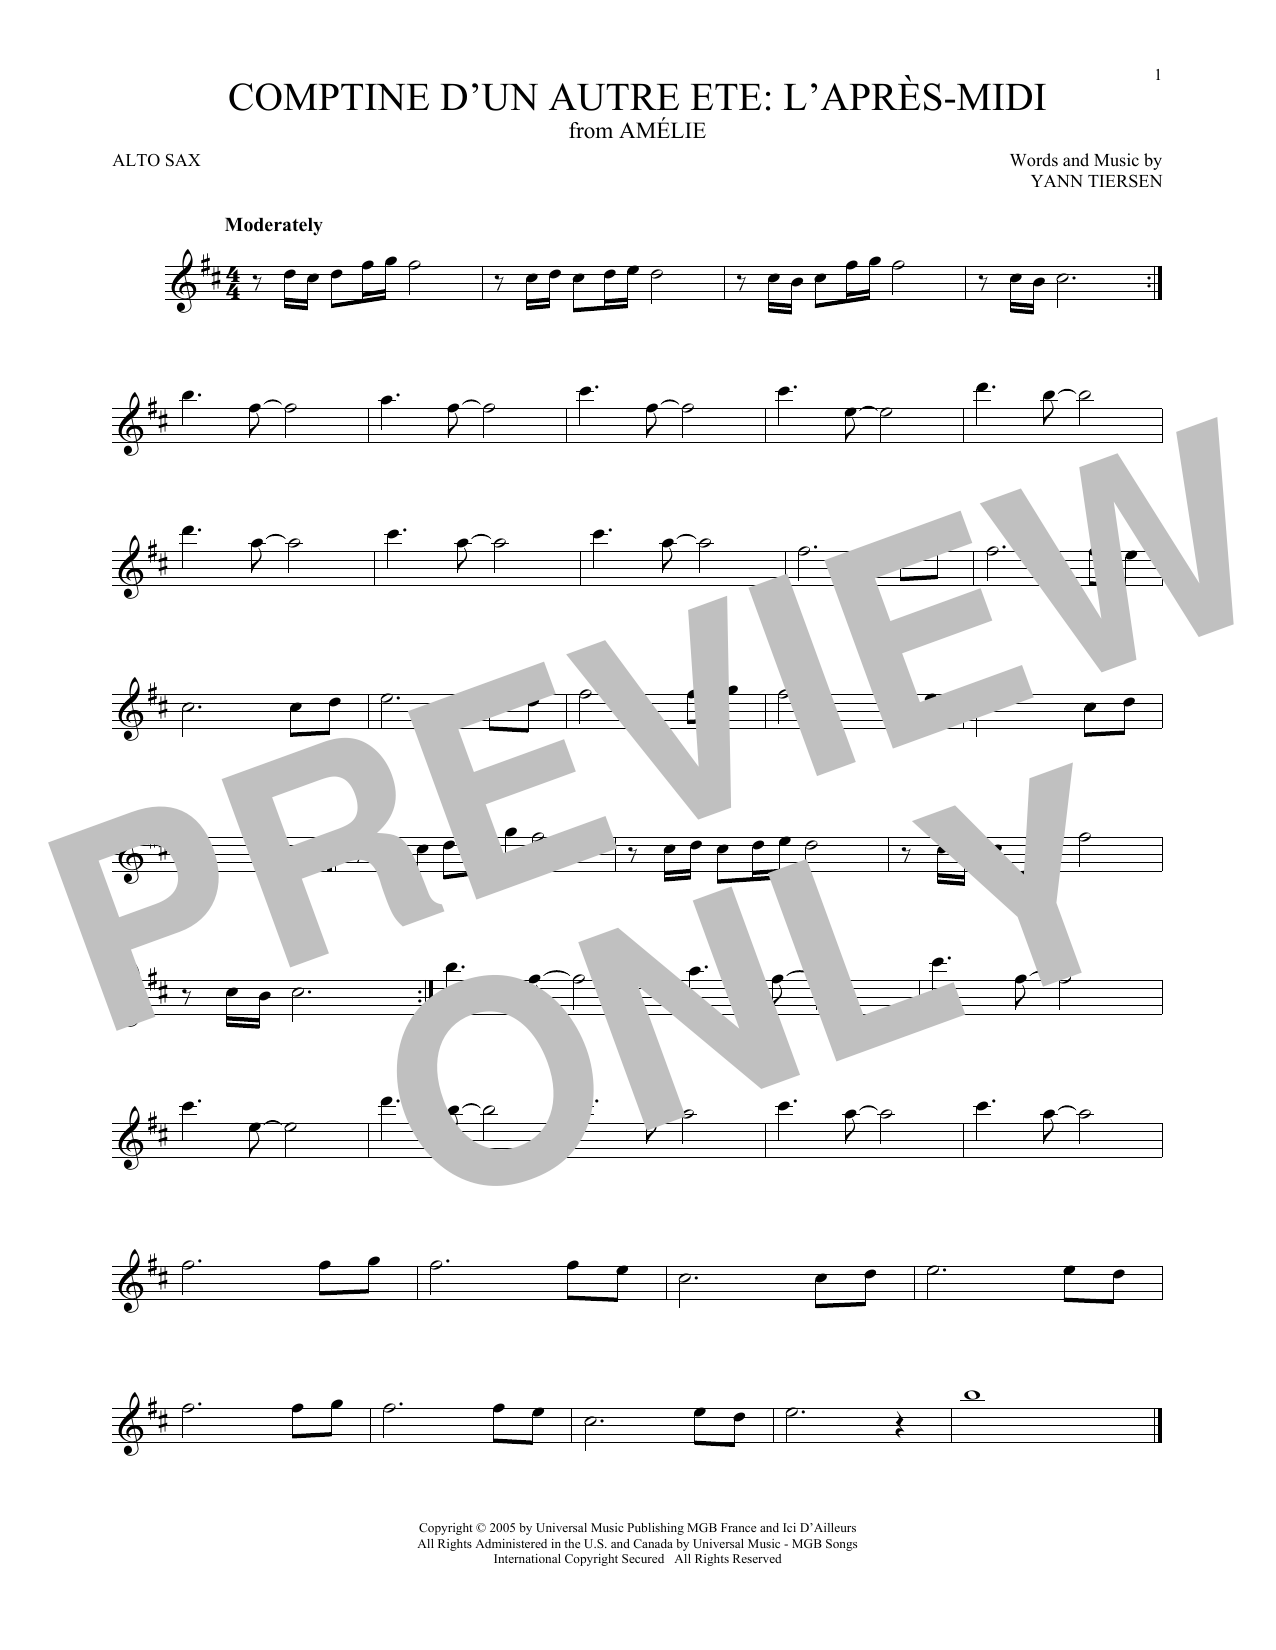 Download Yann Tiersen Comptine d'un autre été: L'après-midi (from Amelie) Sheet Music and learn how to play Tenor Sax Solo PDF digital score in minutes